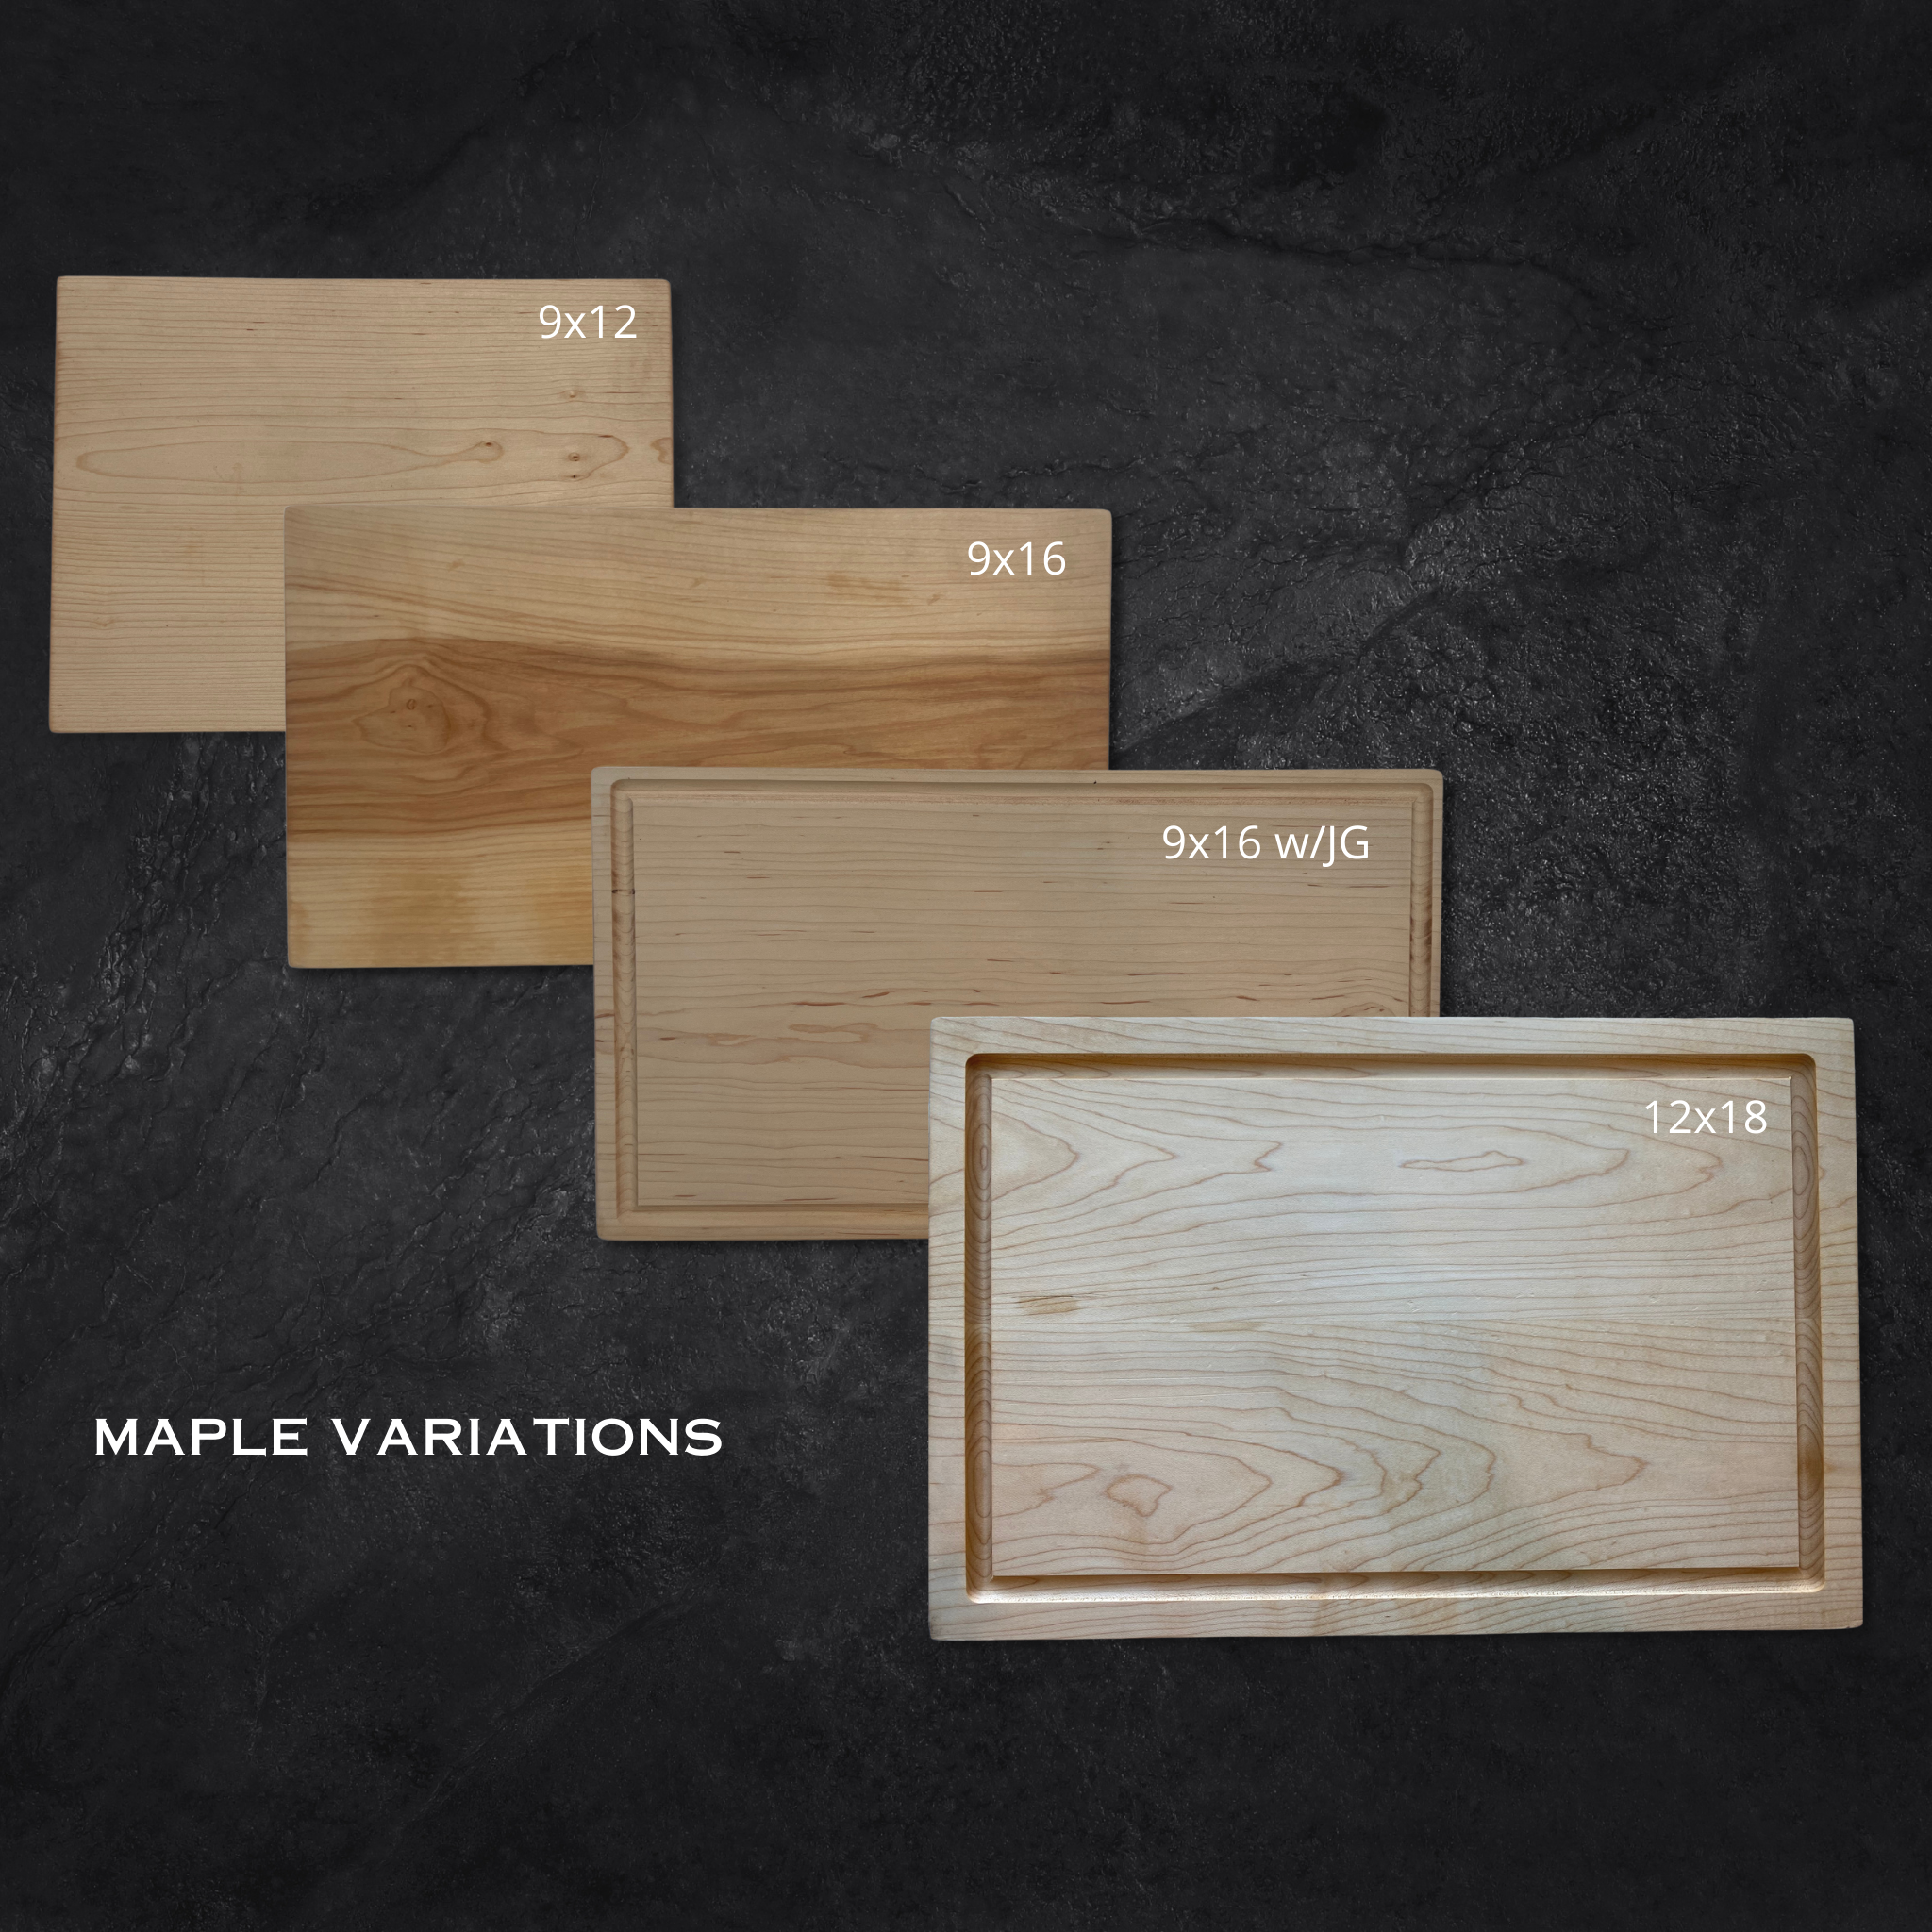 Teak Cutting Board, Personalized, 12 x 9, Board T – TrueLove Designs Shop